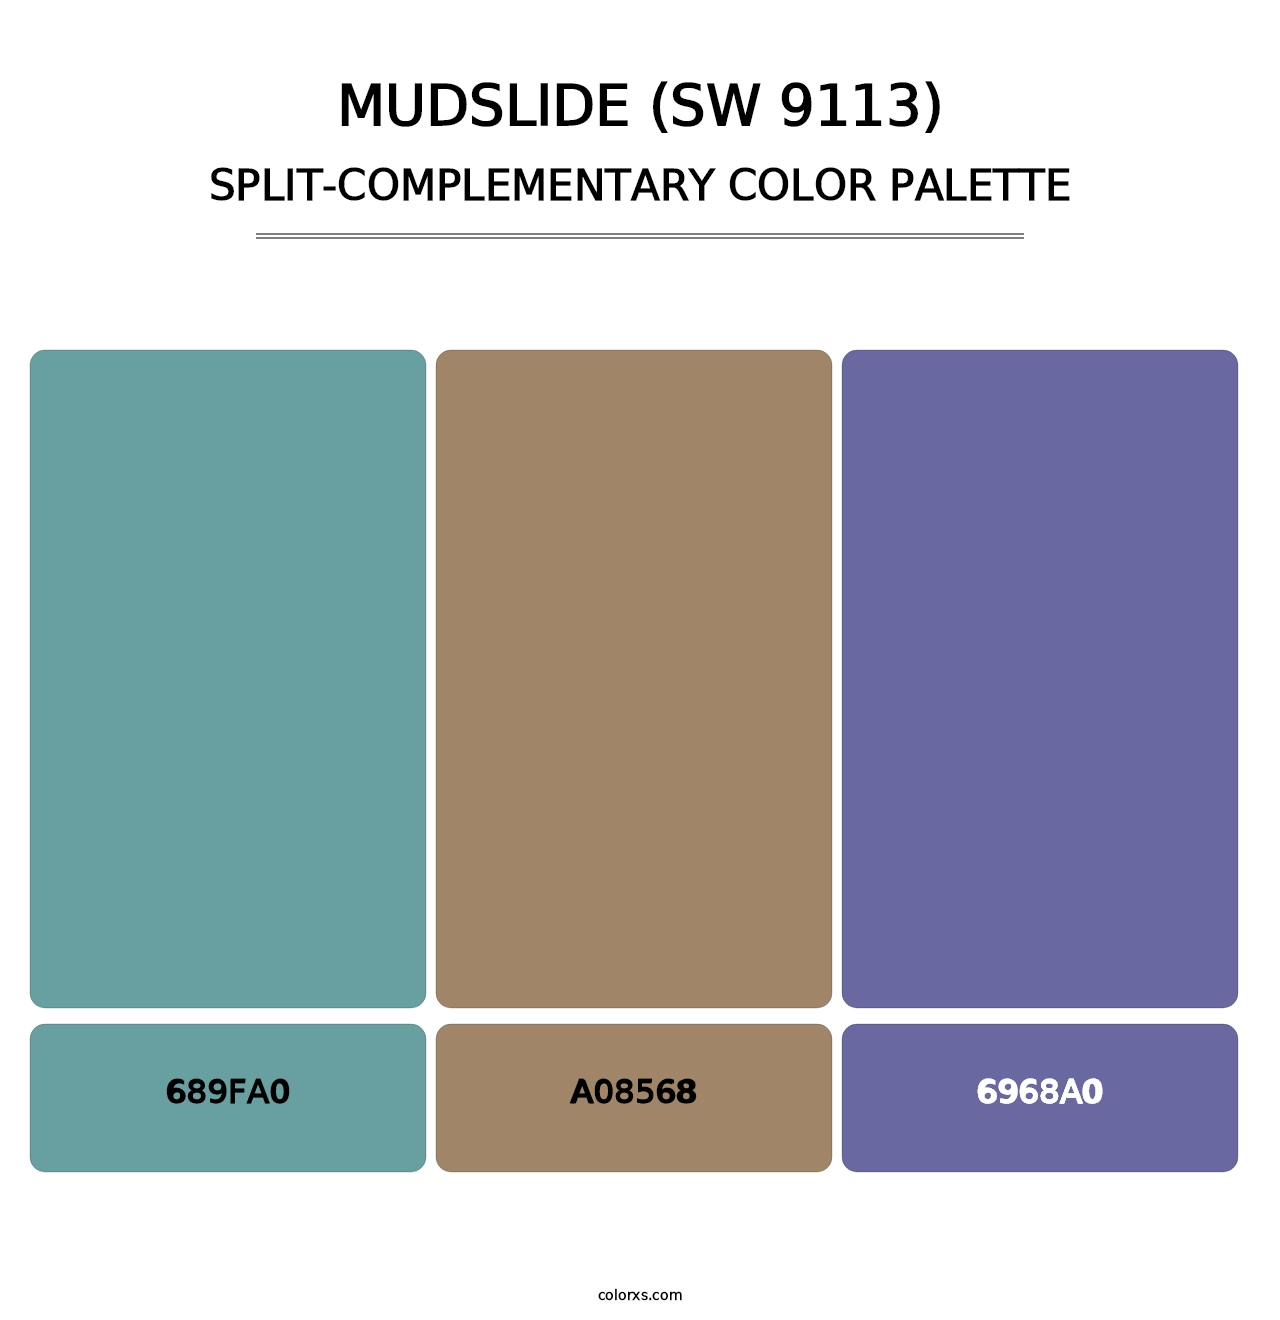 Mudslide (SW 9113) - Split-Complementary Color Palette